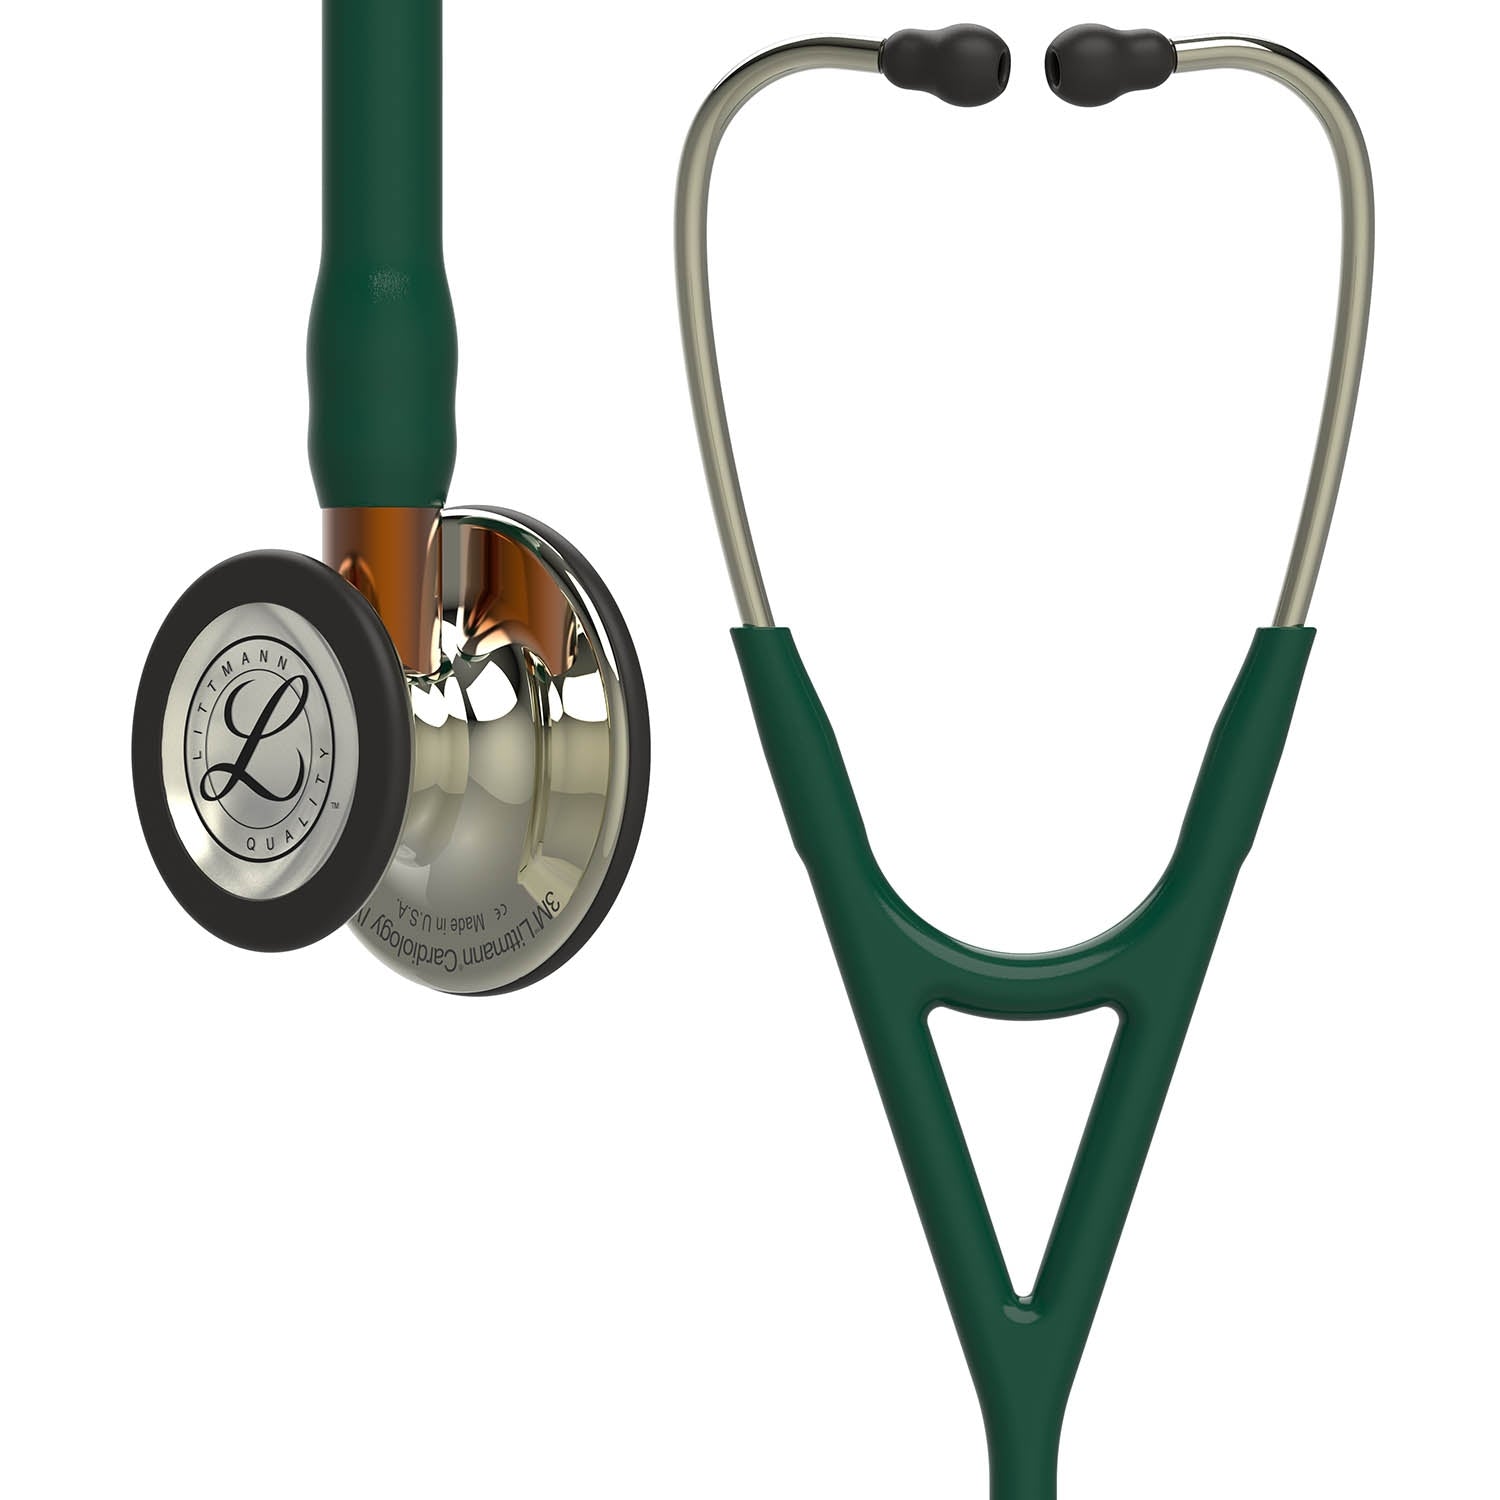 Stethoscope pour jouer au docteur ou ecouter la nature, dieters